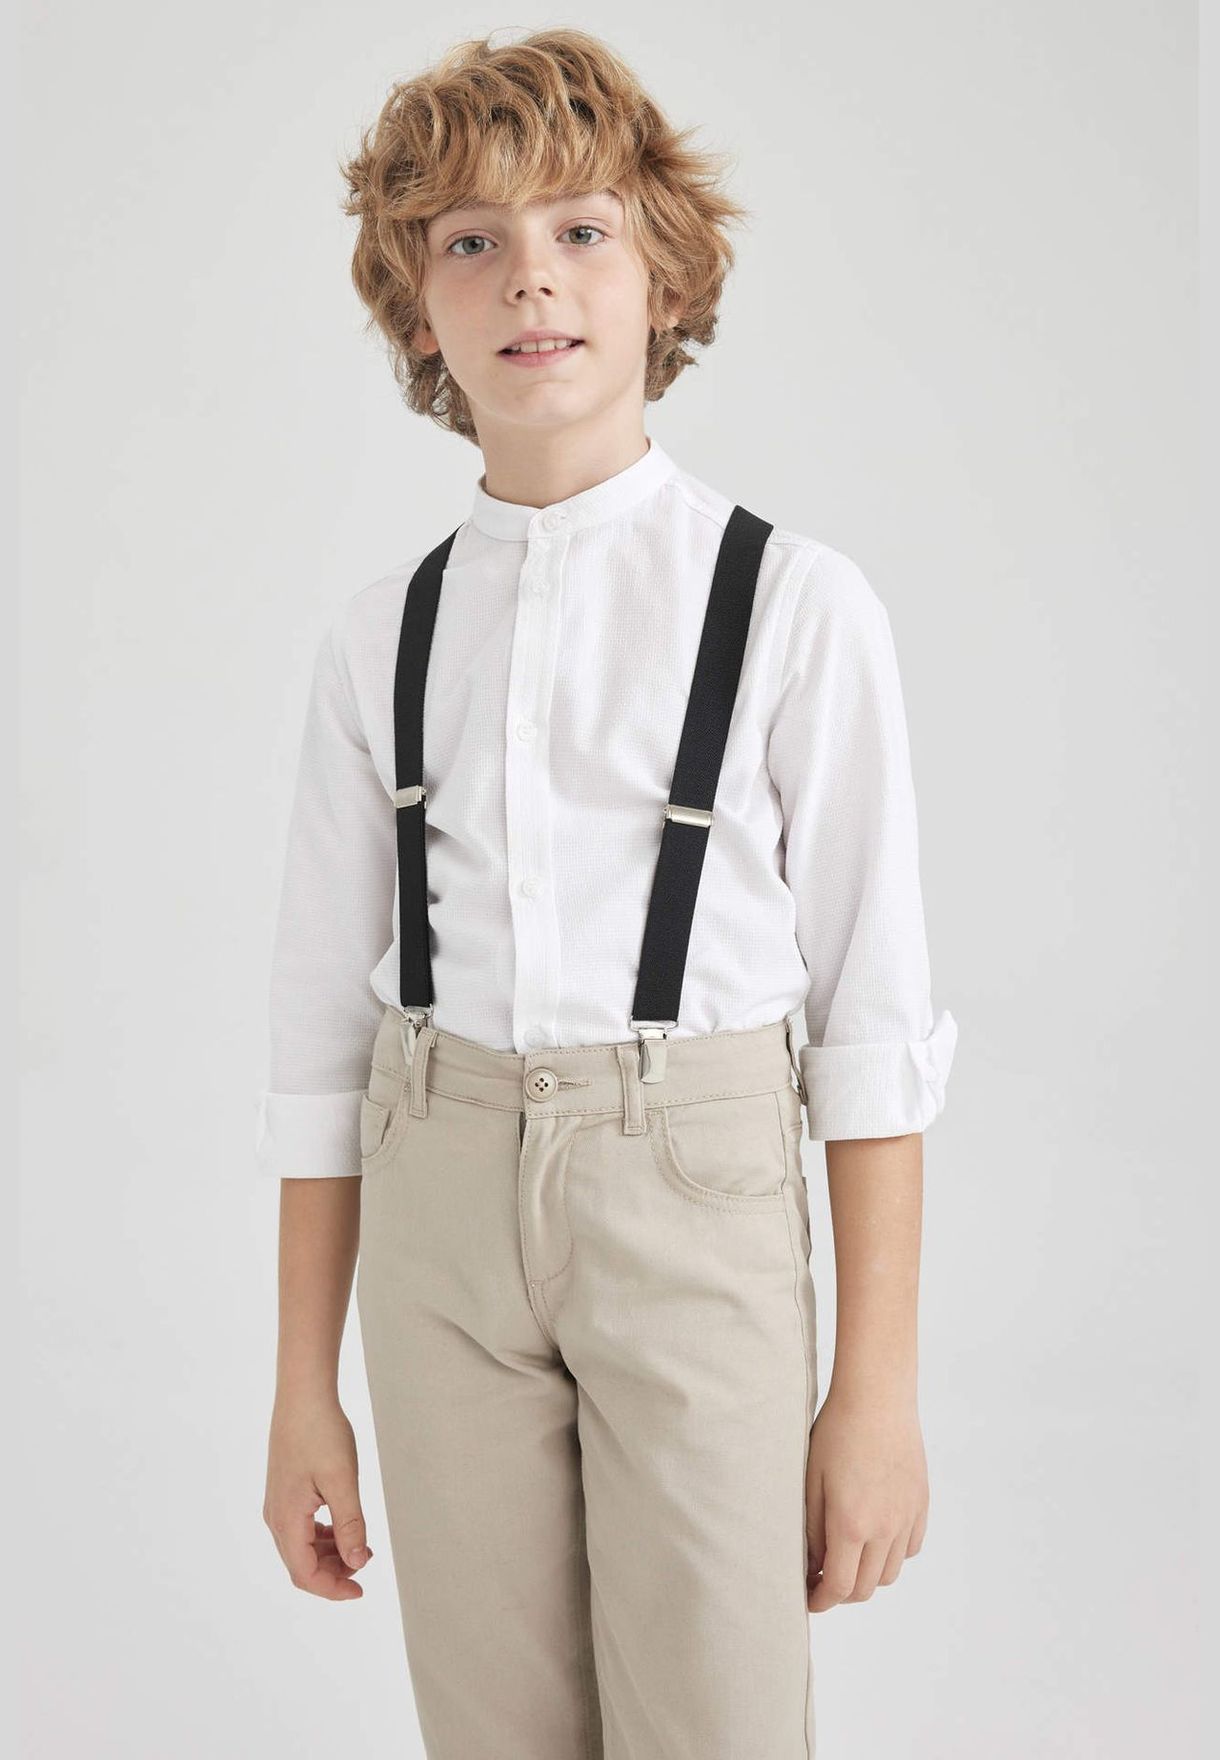 Boy Stand- Up Collar Woven Long Sleeve Shirt